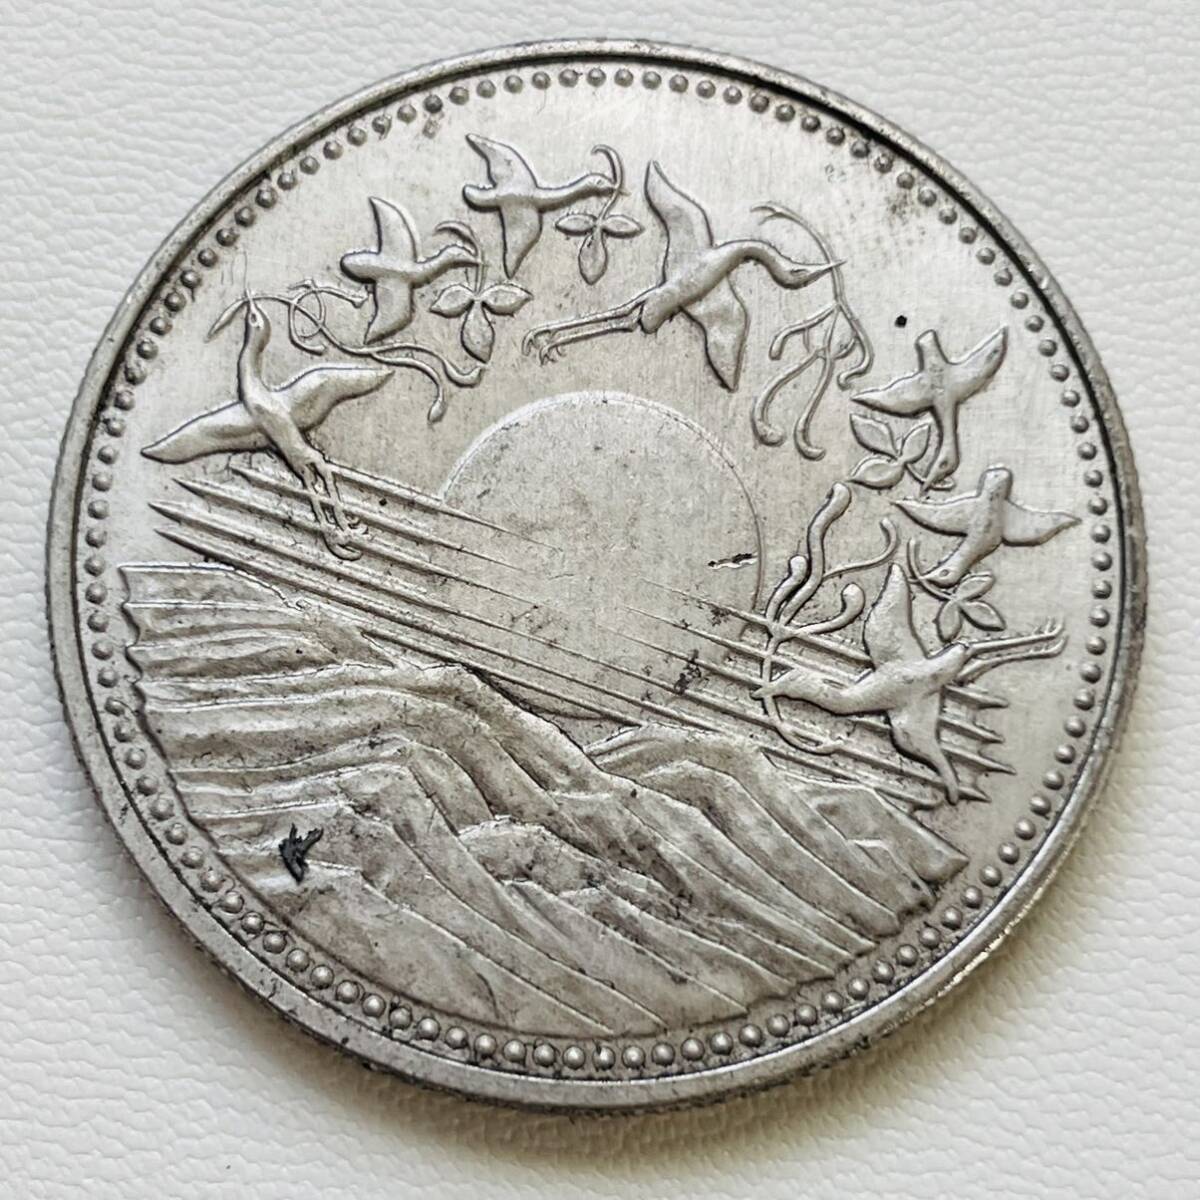 日本 硬貨 古銭 記念幣 1986年 「御在位六十年・昭和六十一年」 太陽紋 鶴 菊紋 記念幣 コイン「レプリカ」 _画像1